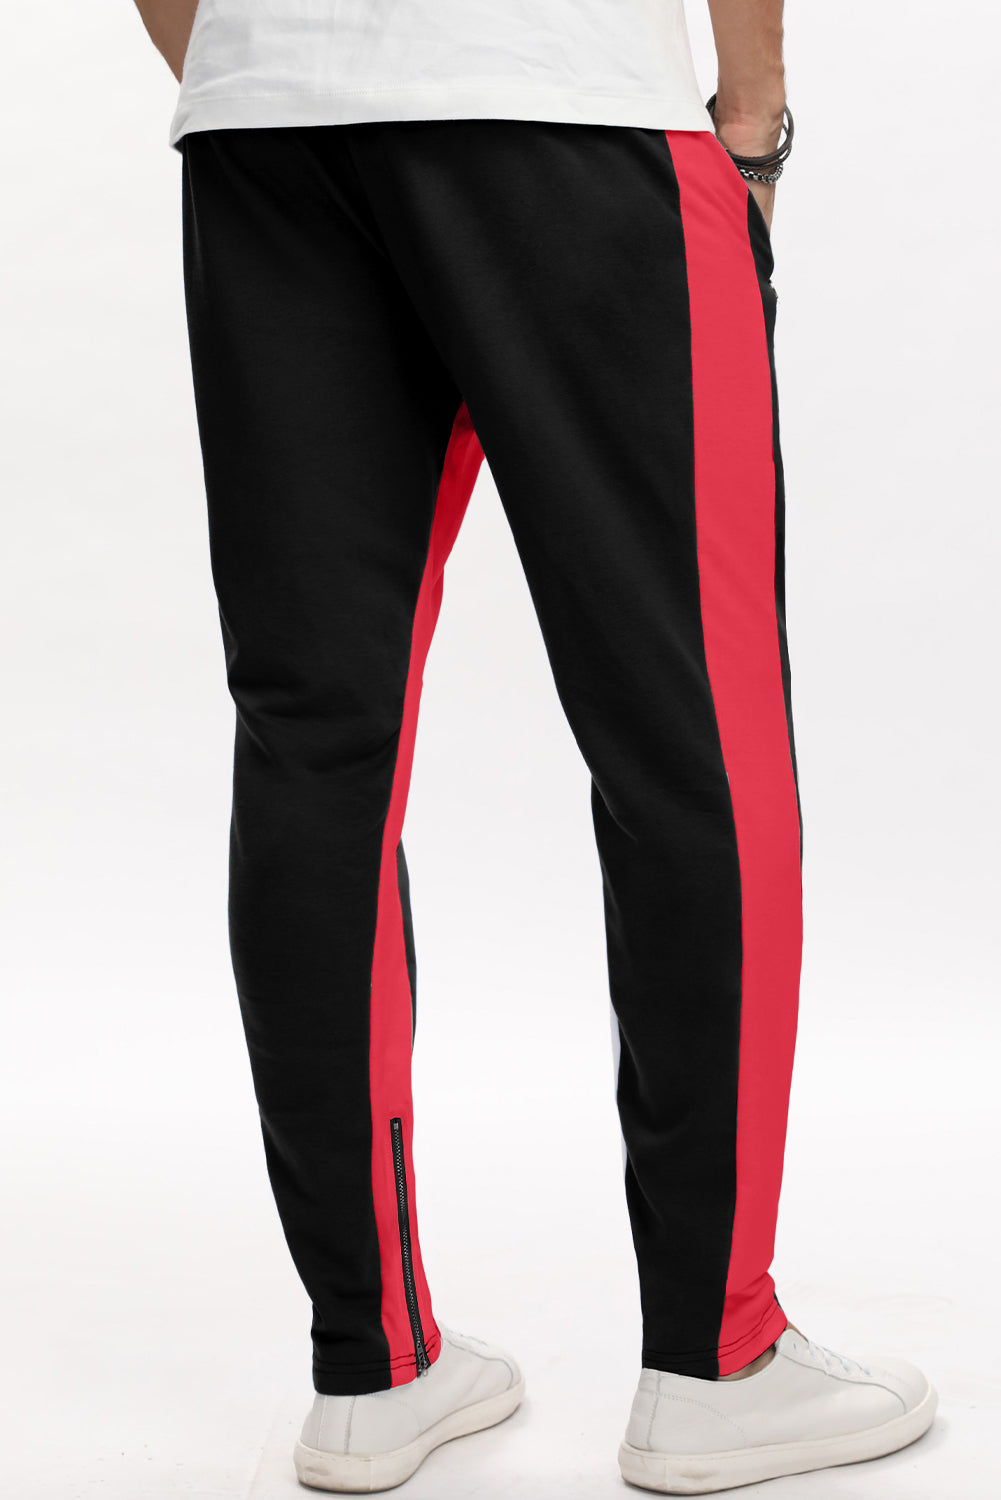 Red Colorblock Patchwork Zipper Casual Mens Joggers Men's Pants JT's Designer Fashion